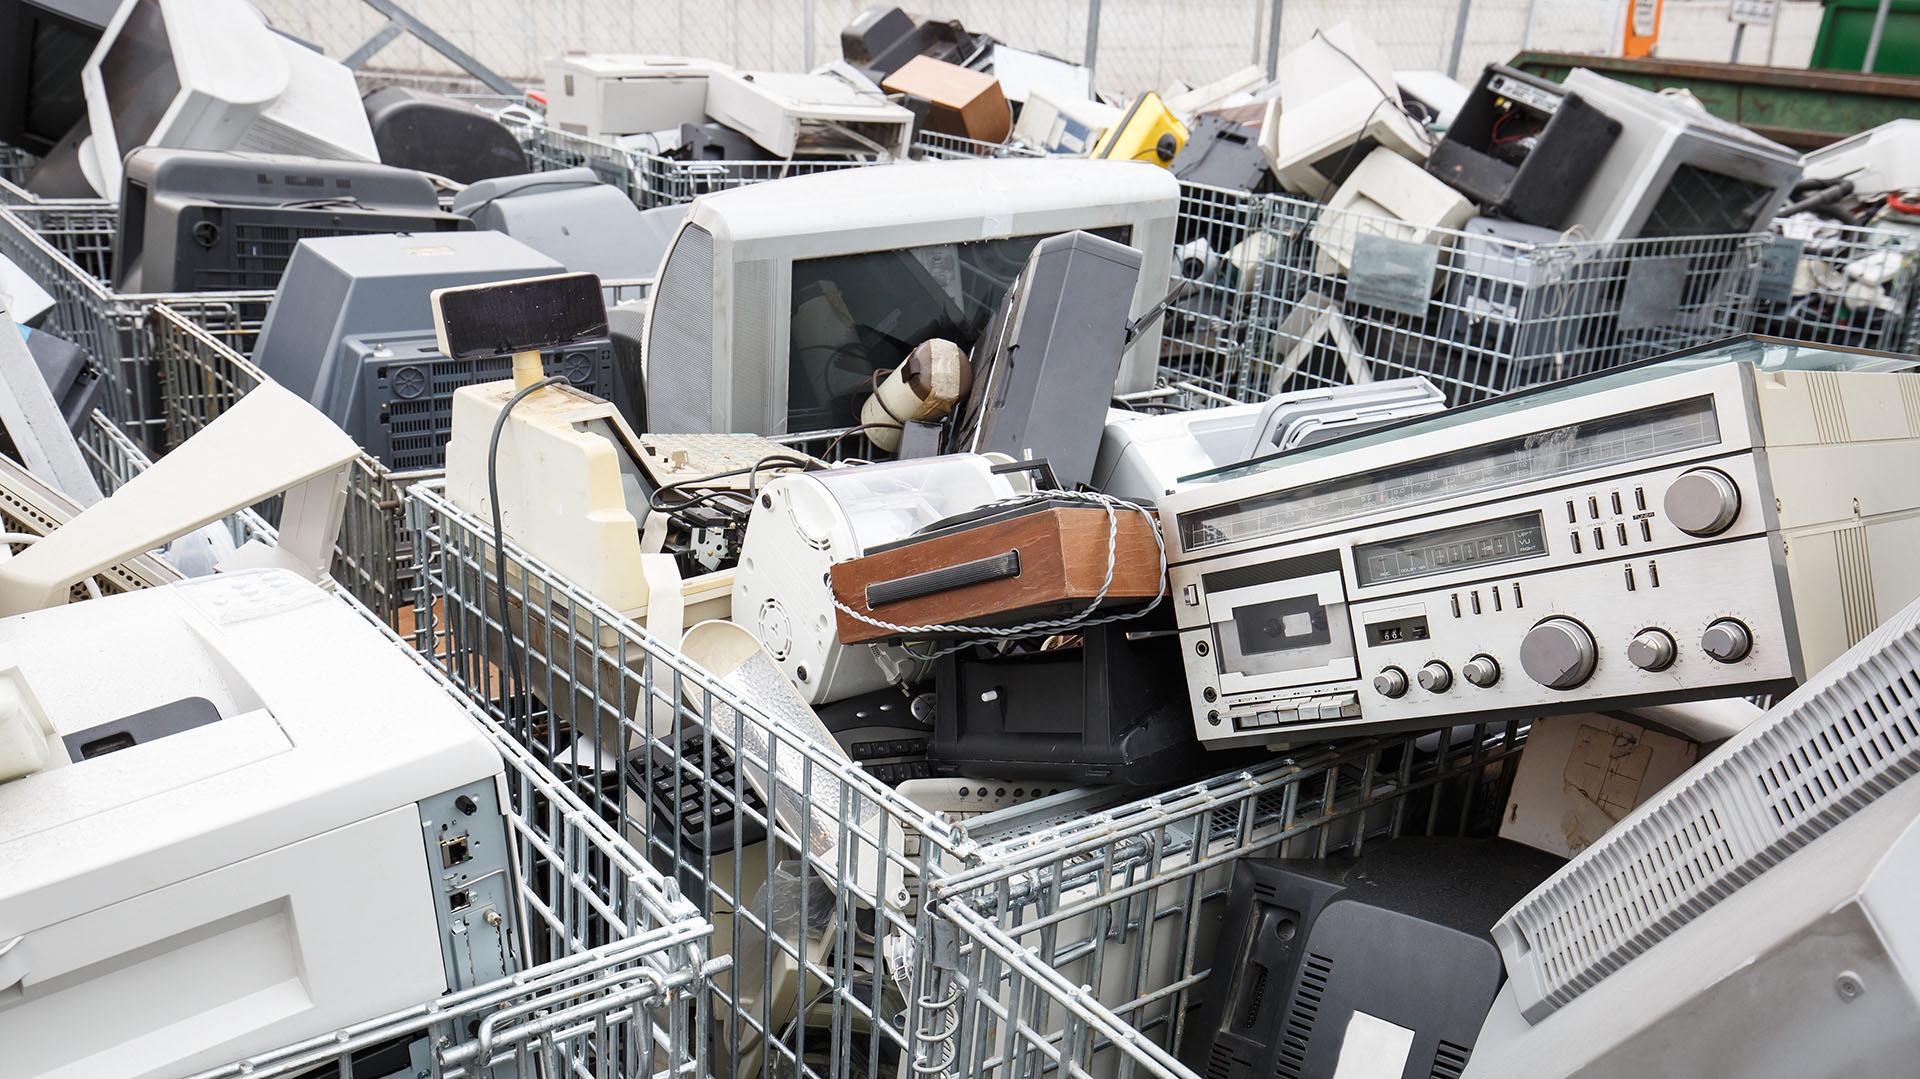 El 90% de la basura electrónica de 2017 terminó como relleno sanitario, incinerado o traficado ilegalmente. (Shutterstock)